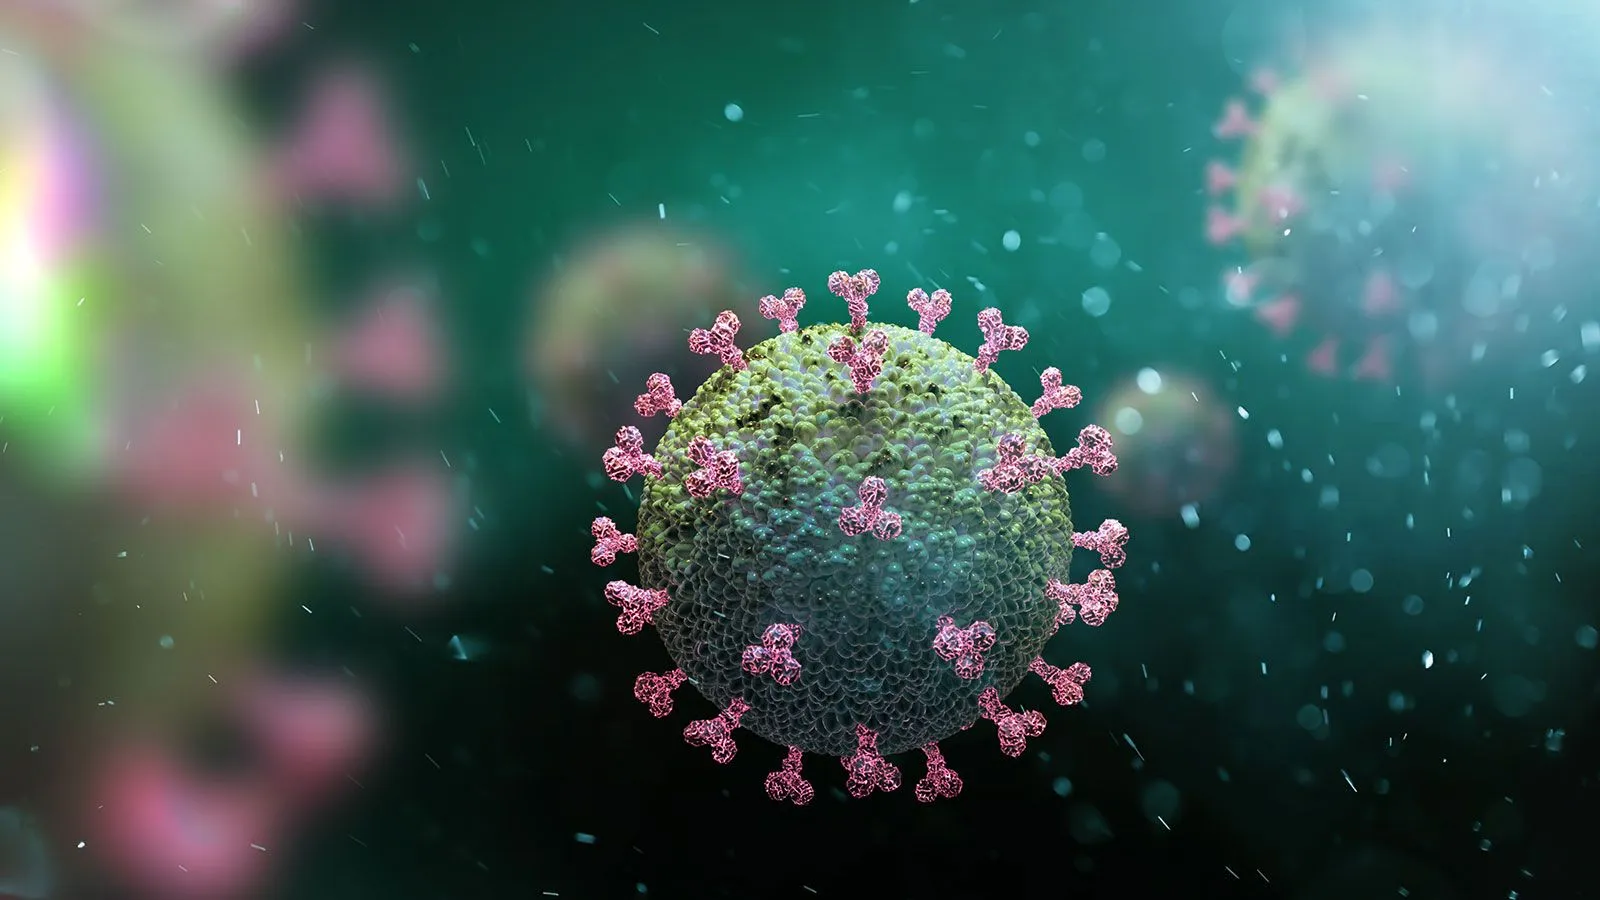 DSÖ'den Flaş Koronavirüs Açıklaması: "Sona Erdi"